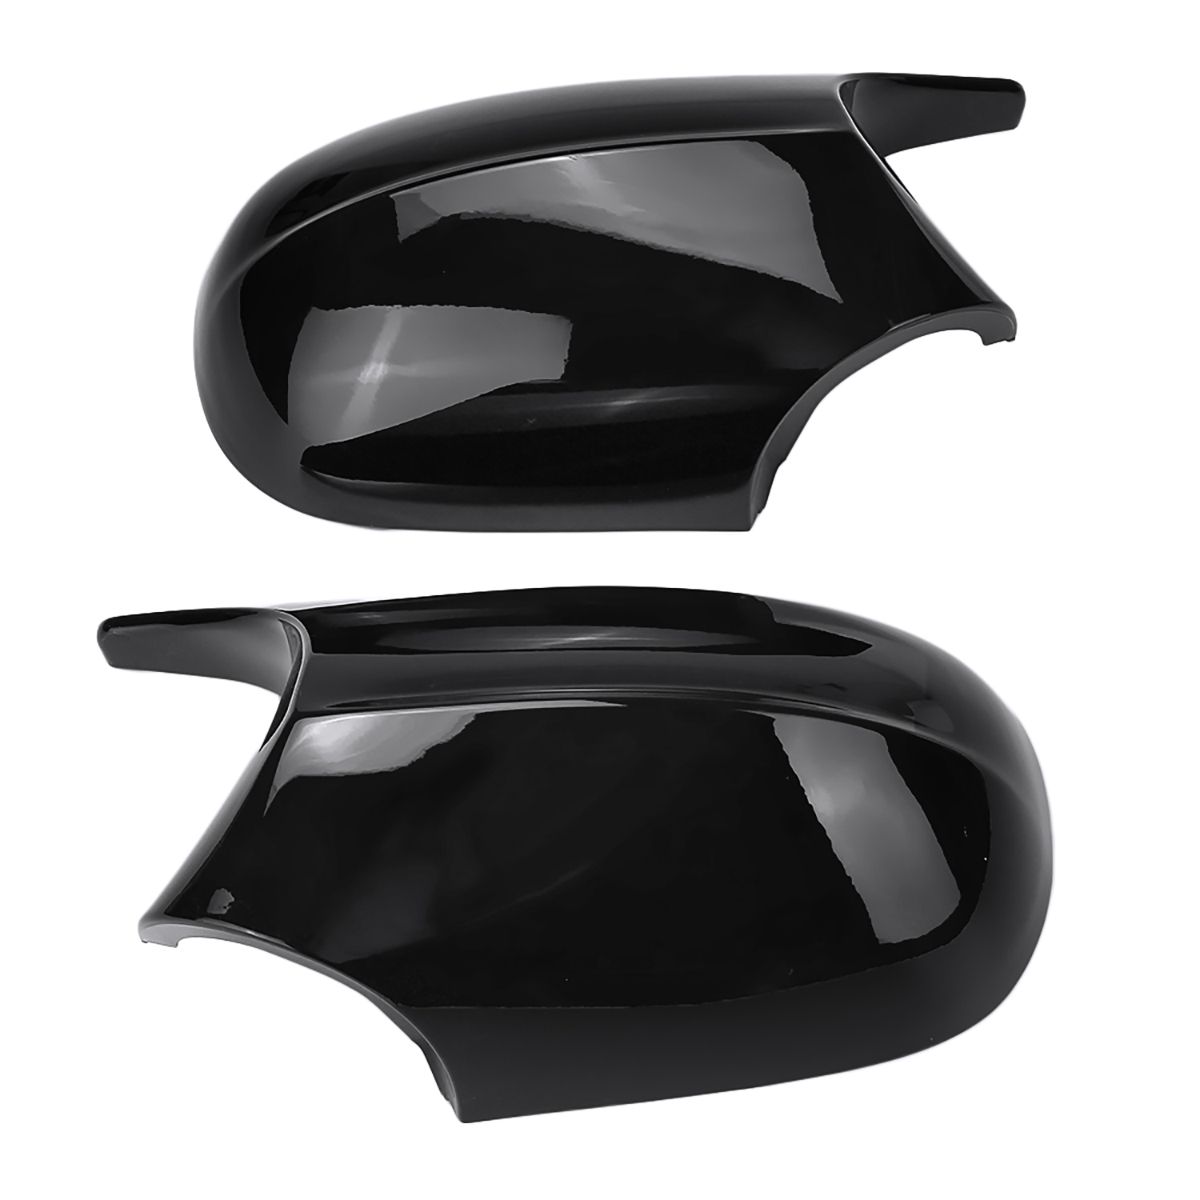 Car-Rear-View-Mirror-Cap-Cover-Replacement-Left--Right-Glossy-Black-For-BMW-E90-E91-2008-2011-E92-E9-1586175